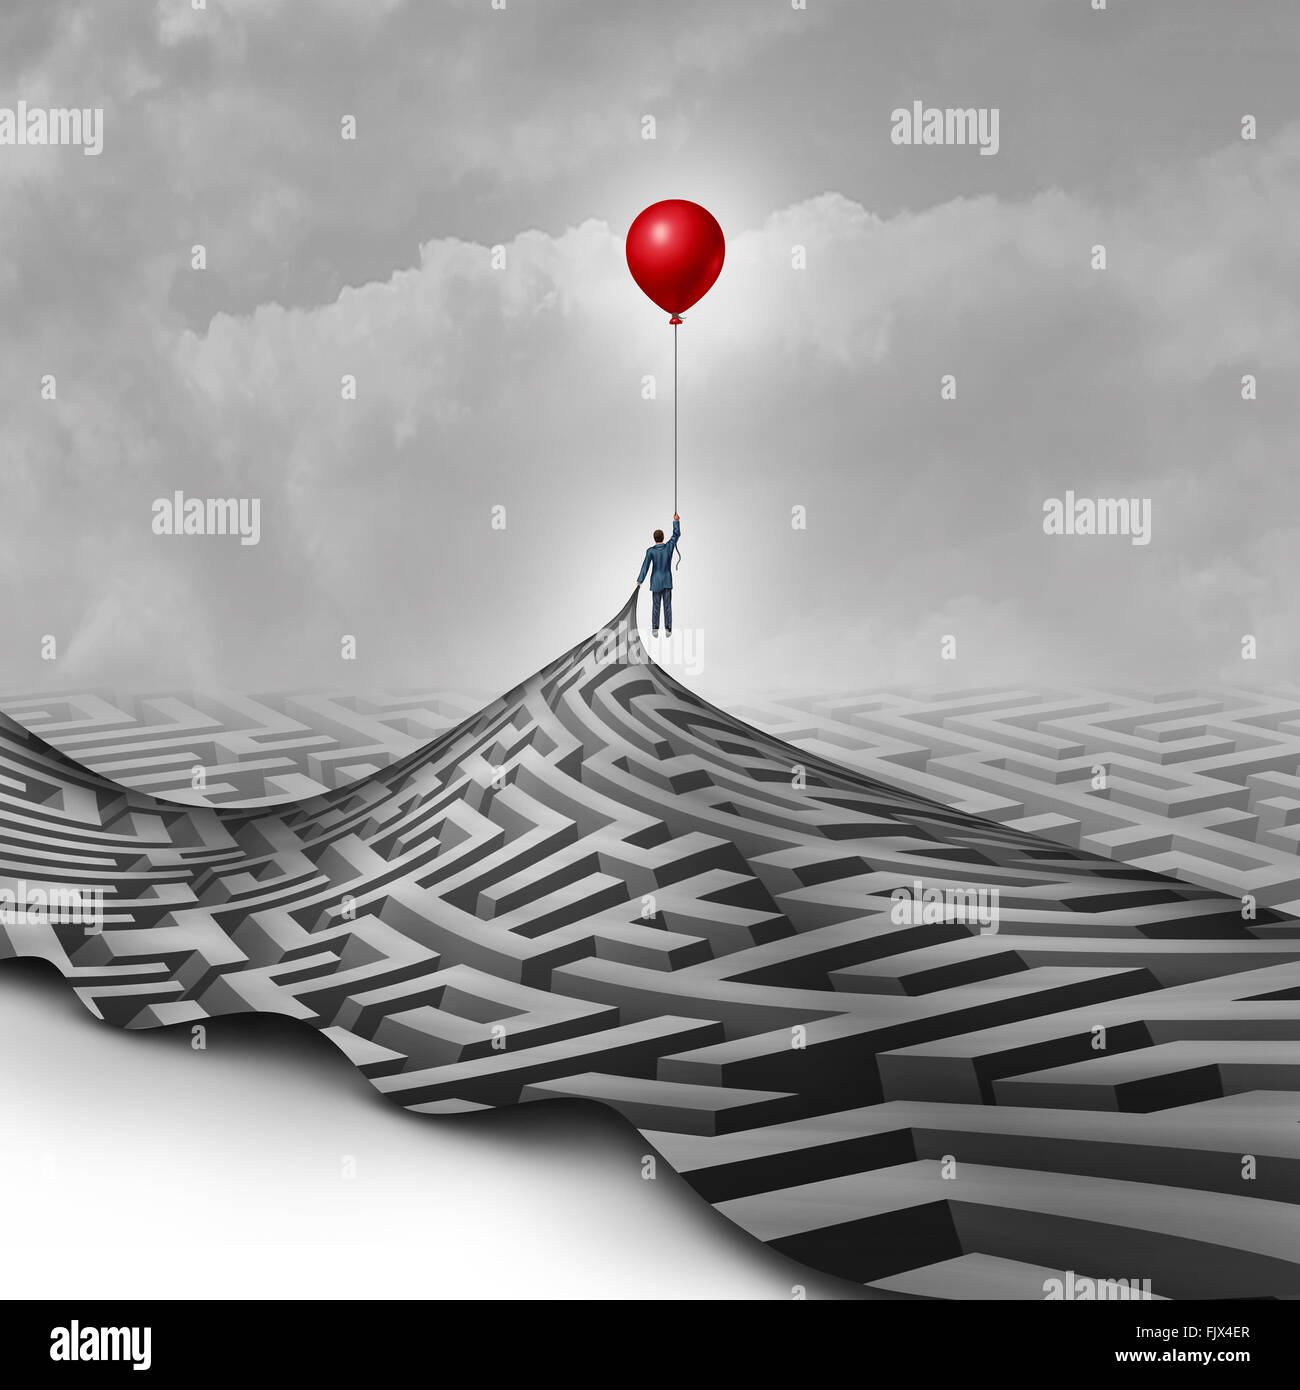 Imprenditore il concetto di successo come una metafora per superare gli ostacoli come una persona che solleva un labirinto o labirinto utilizzando un palloncino rosso come il simbolo di una visione e di trovare un modo per avere successo. Foto Stock